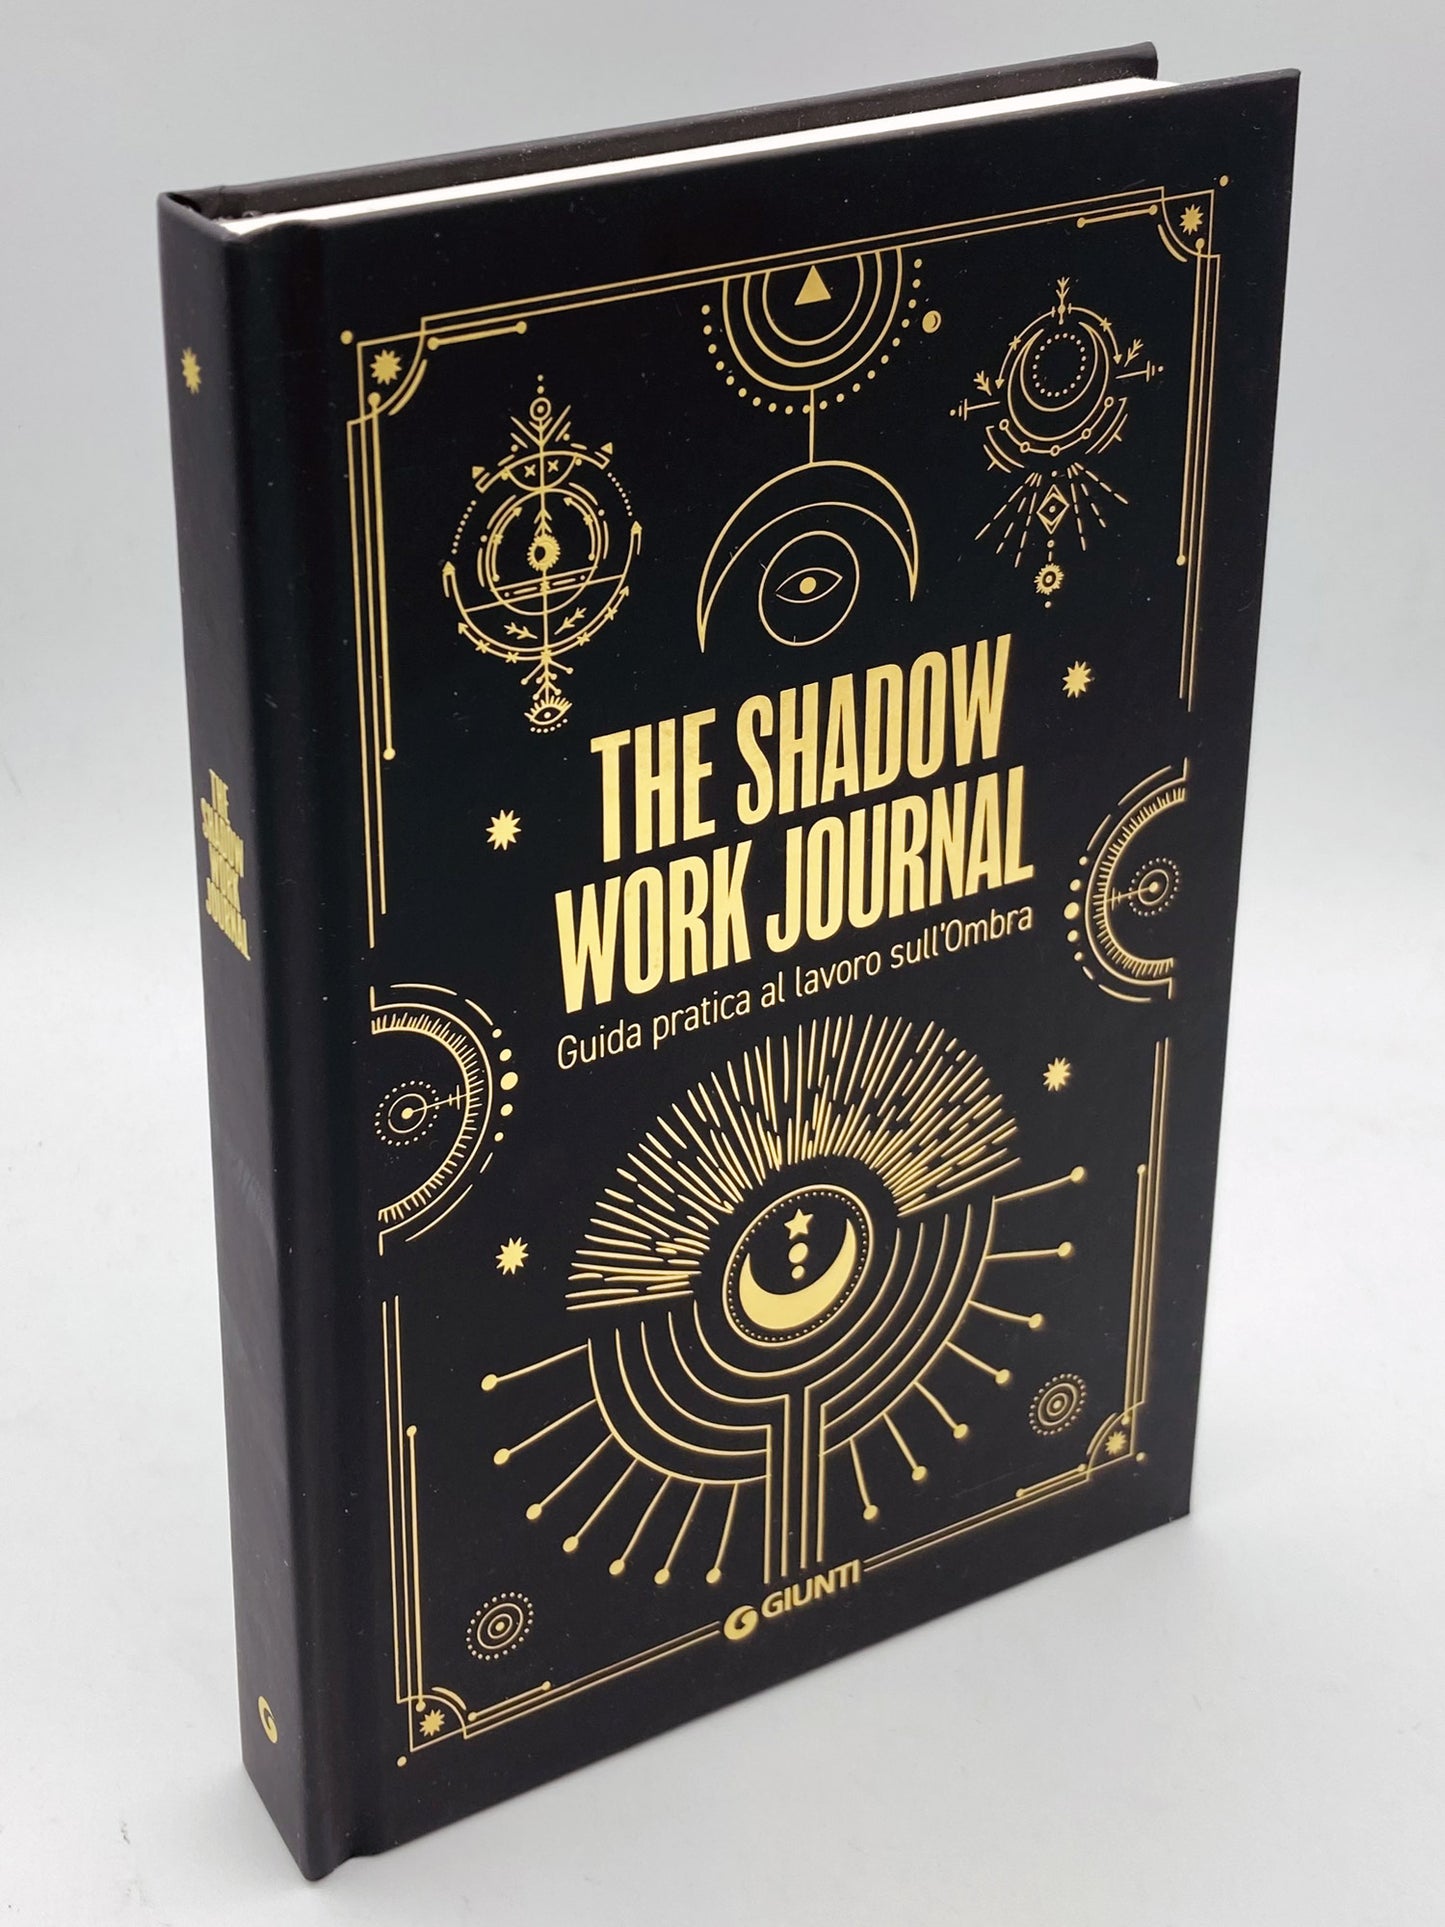 The Shadow Work Journal::Guida pratica al lavoro sull'Ombra